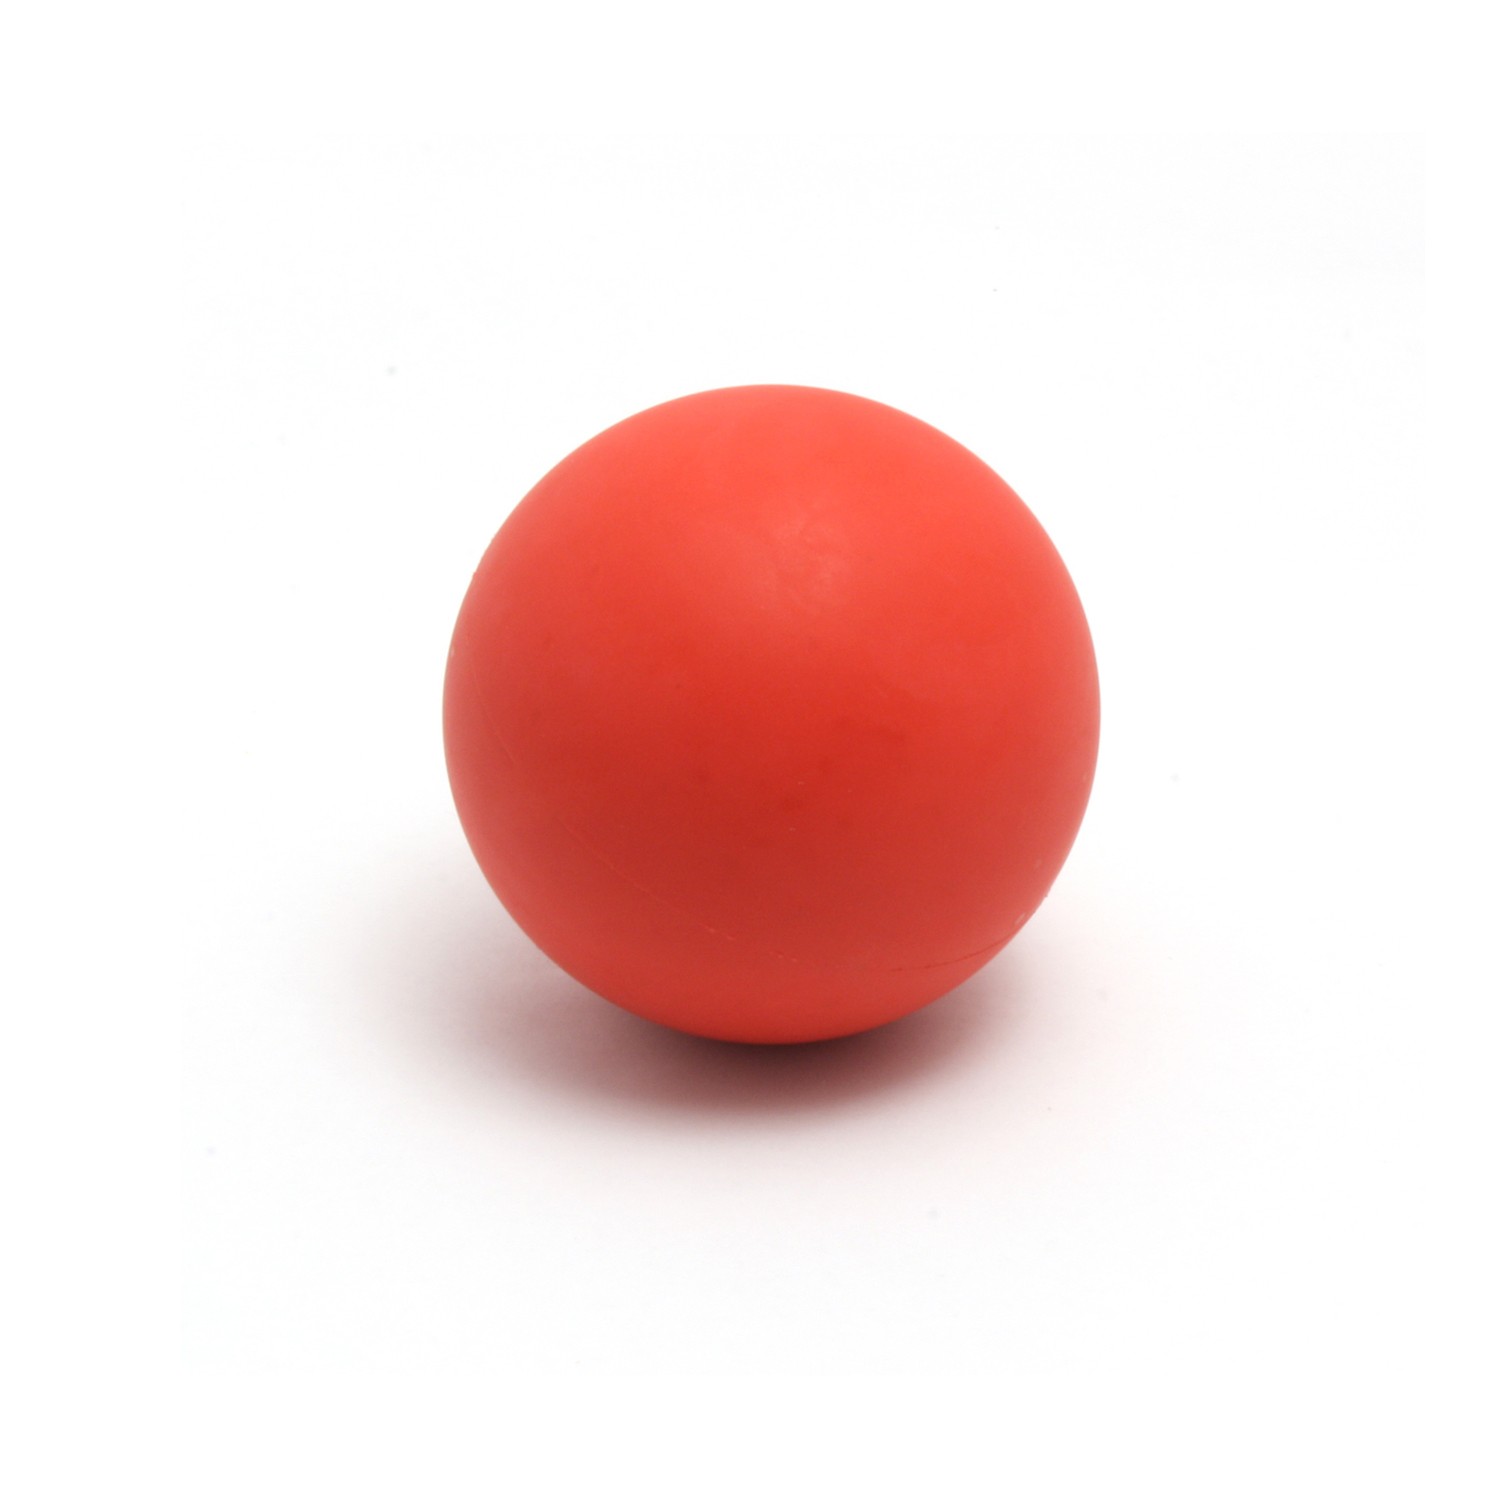 Turbo Bounce Ball изготовлены из высококачественного полимера и предназначе...